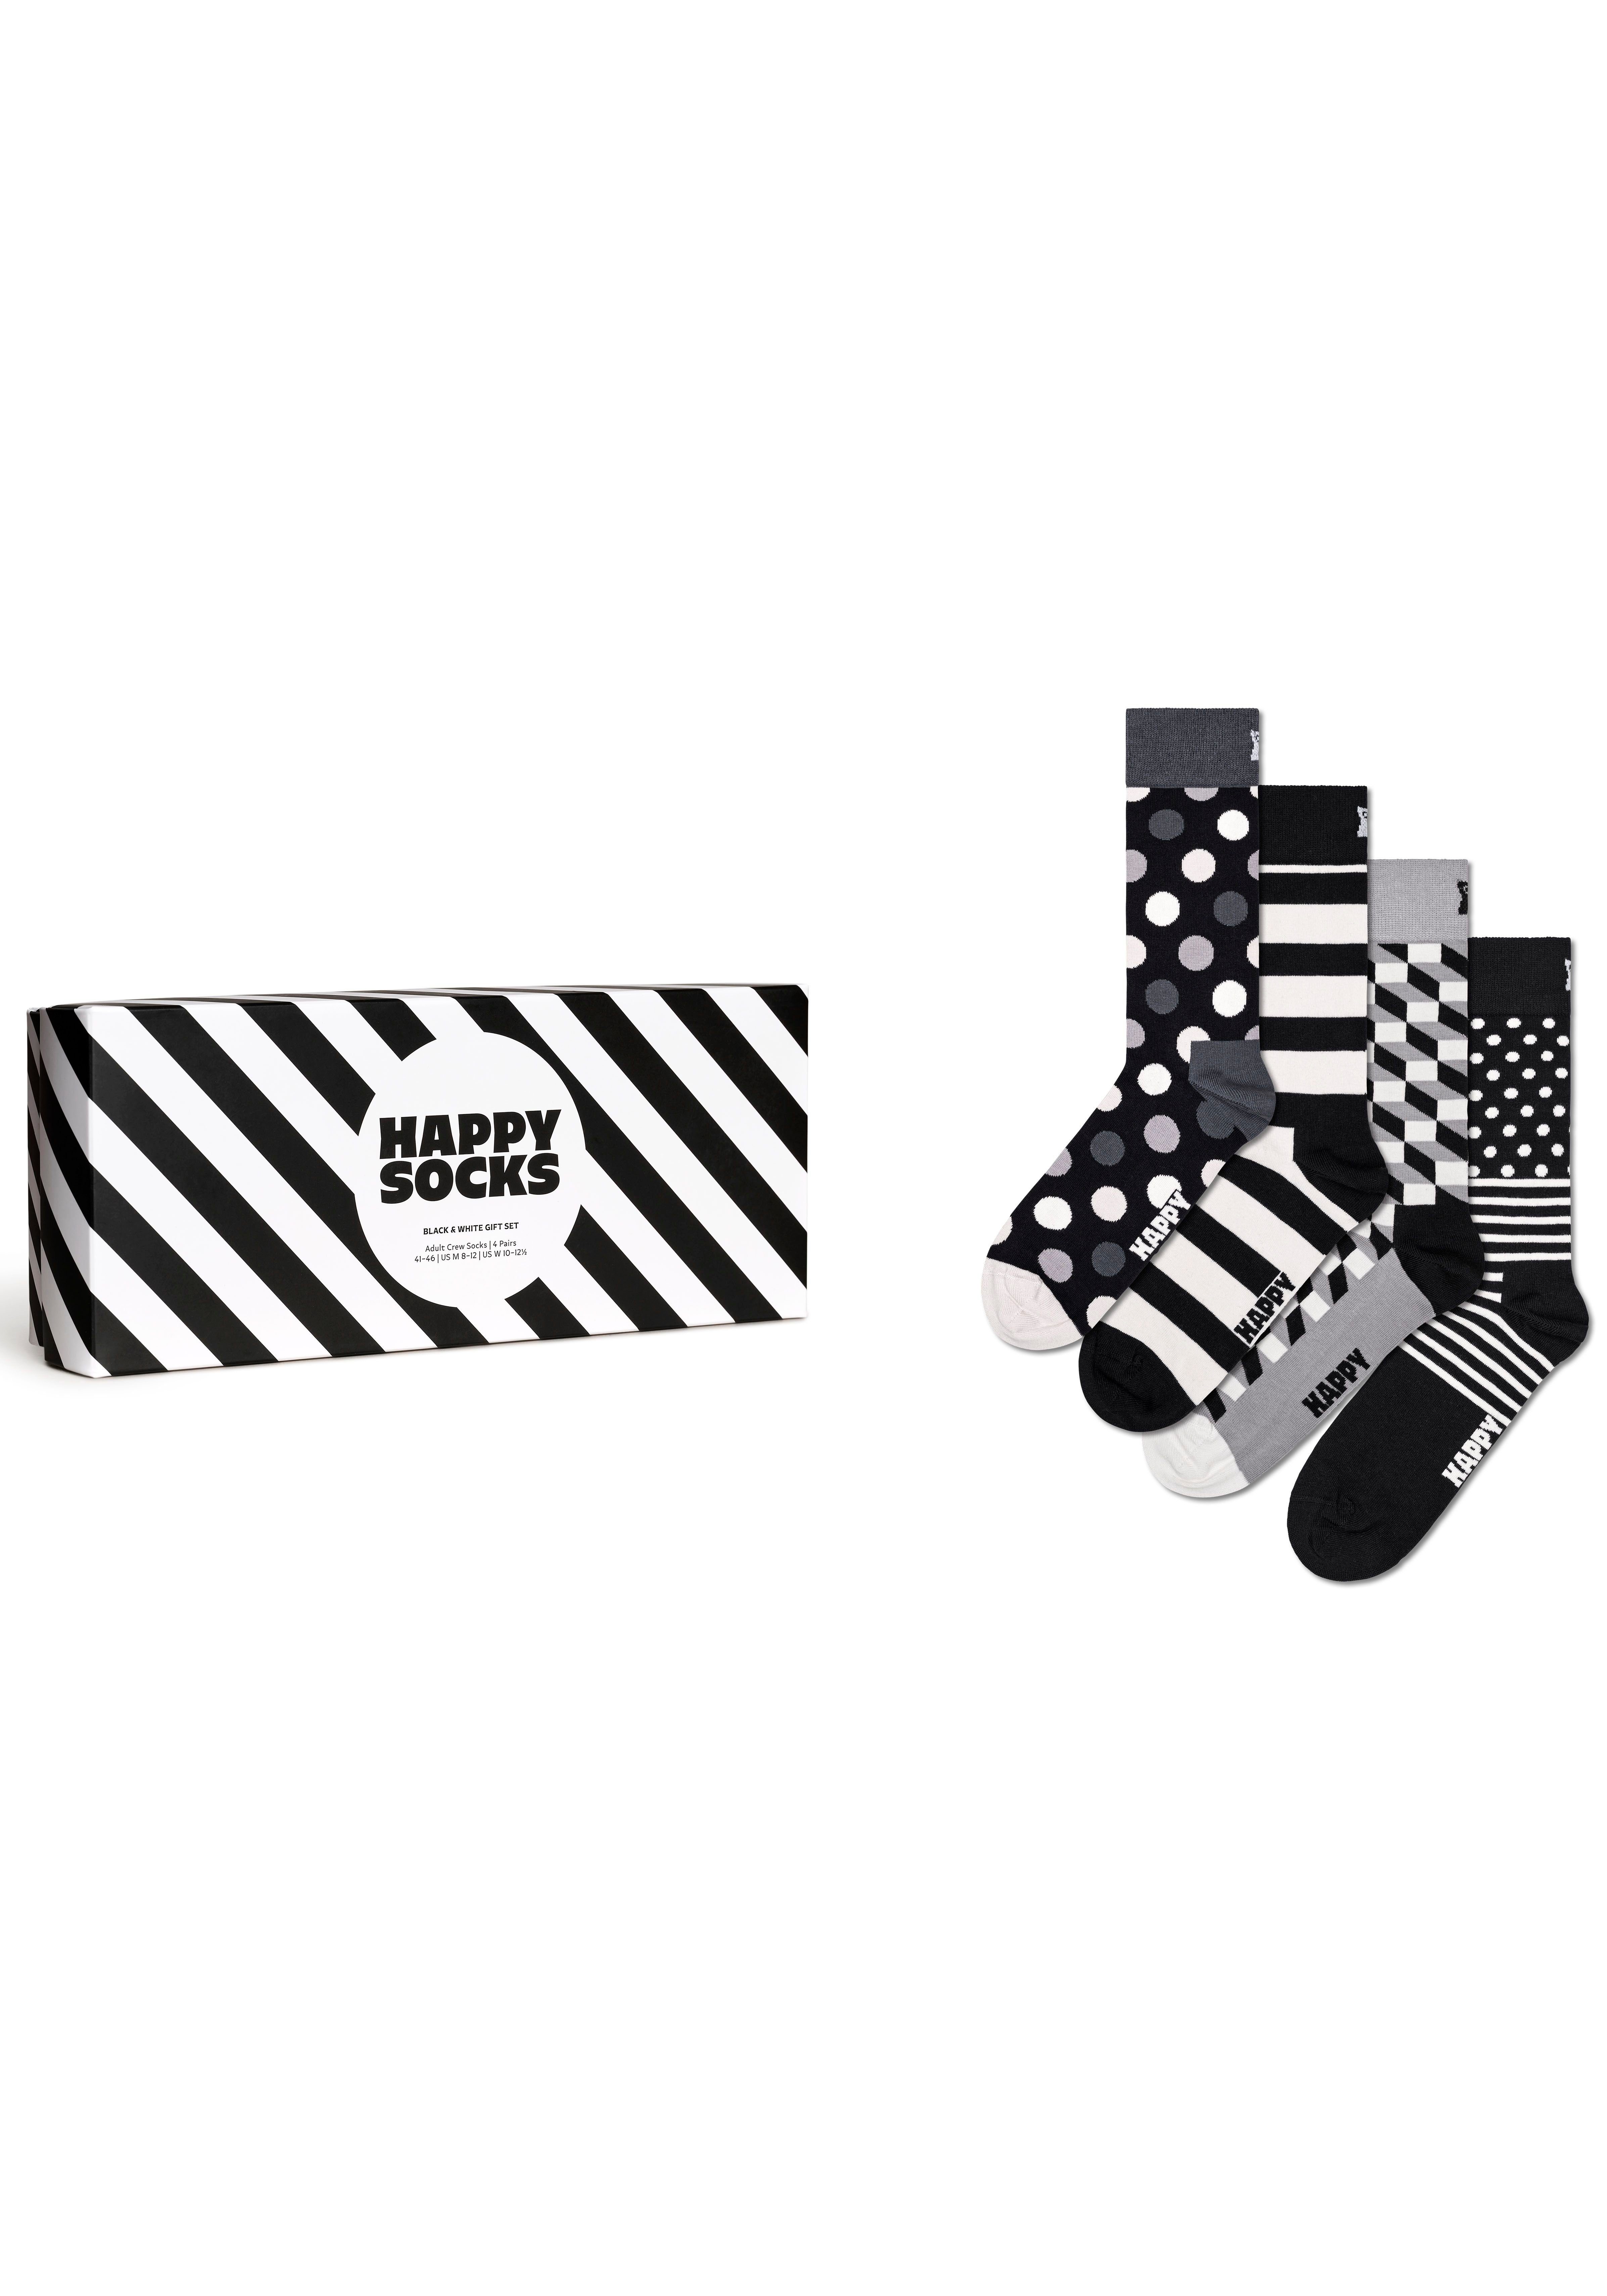 Happy Socks Socken (Packung, Classic Happy Socks 4-Paar) Socks Crew Black White & Pack Set, Gift Socks von 4er